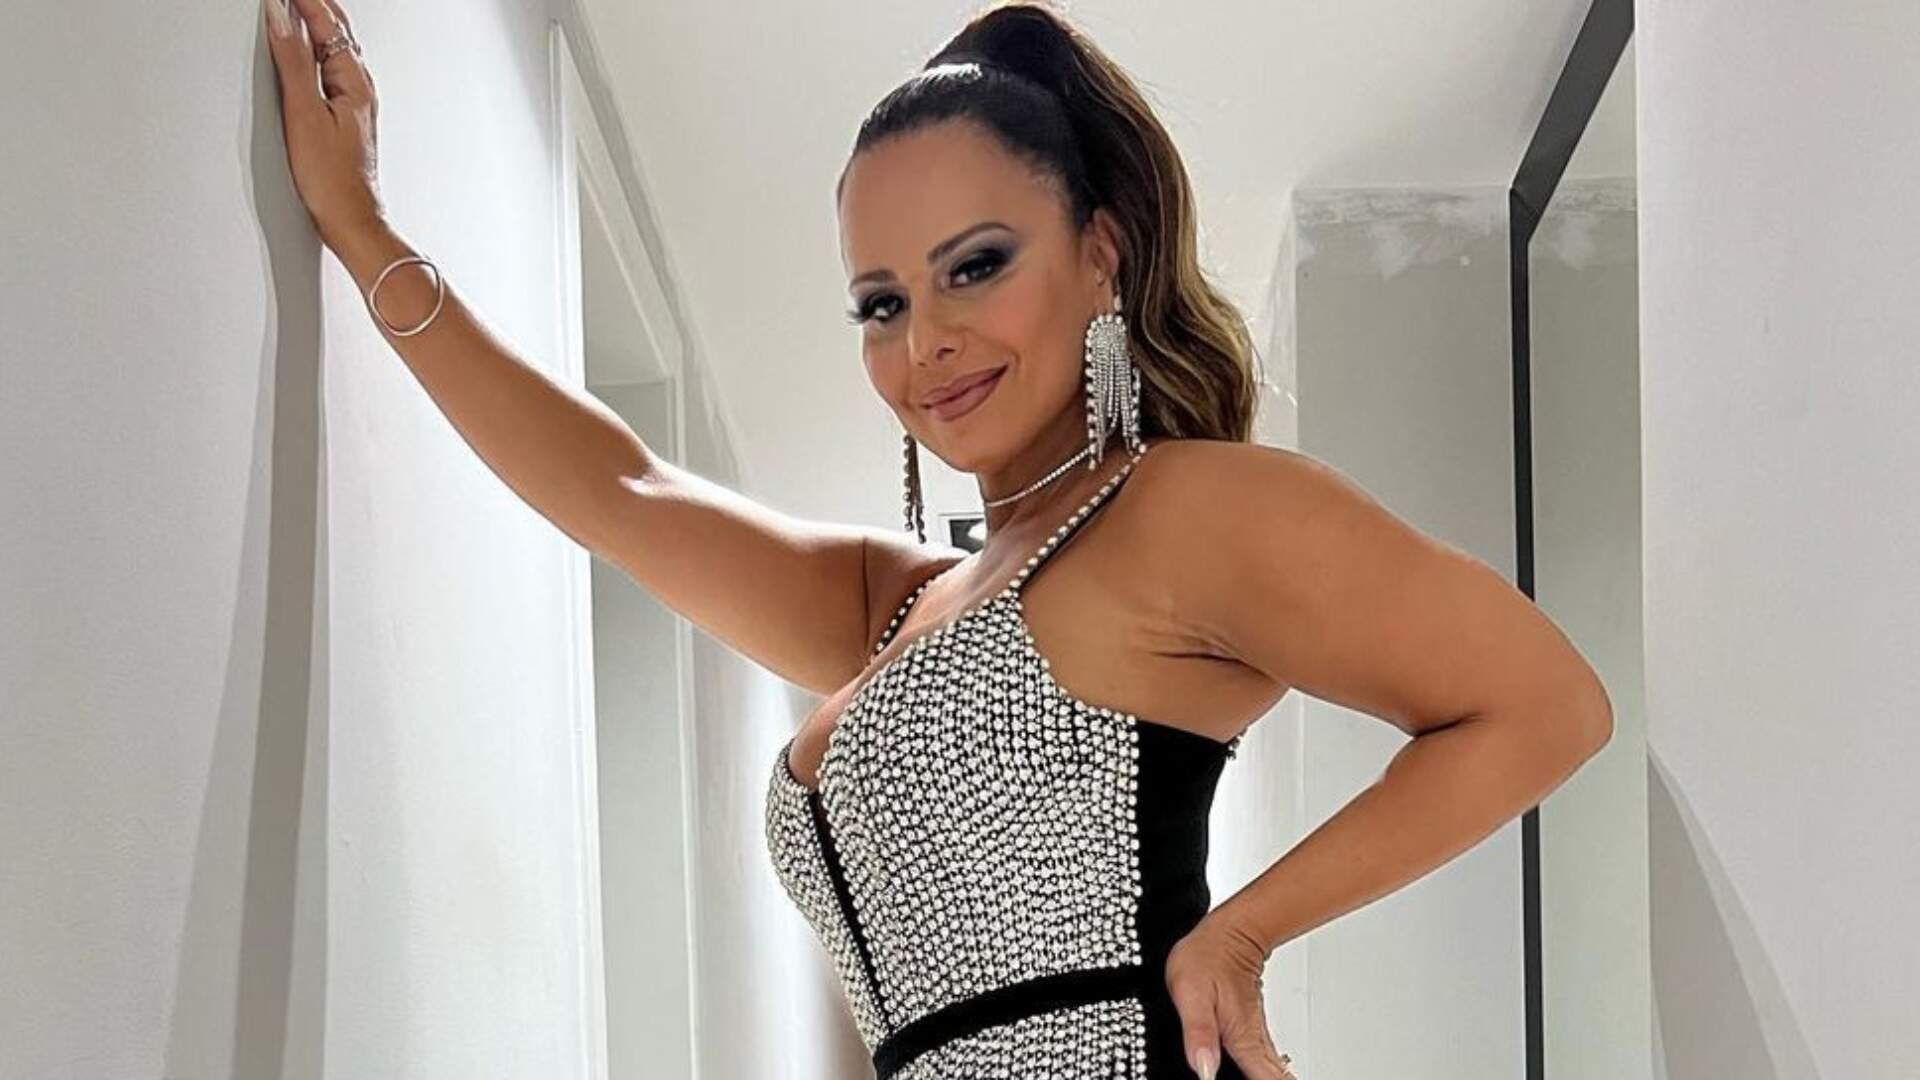 Viviane Araújo perde peso e exibe novo shape em fantasia estilo tapa-sexo: “Meu segredinho” - Metropolitana FM